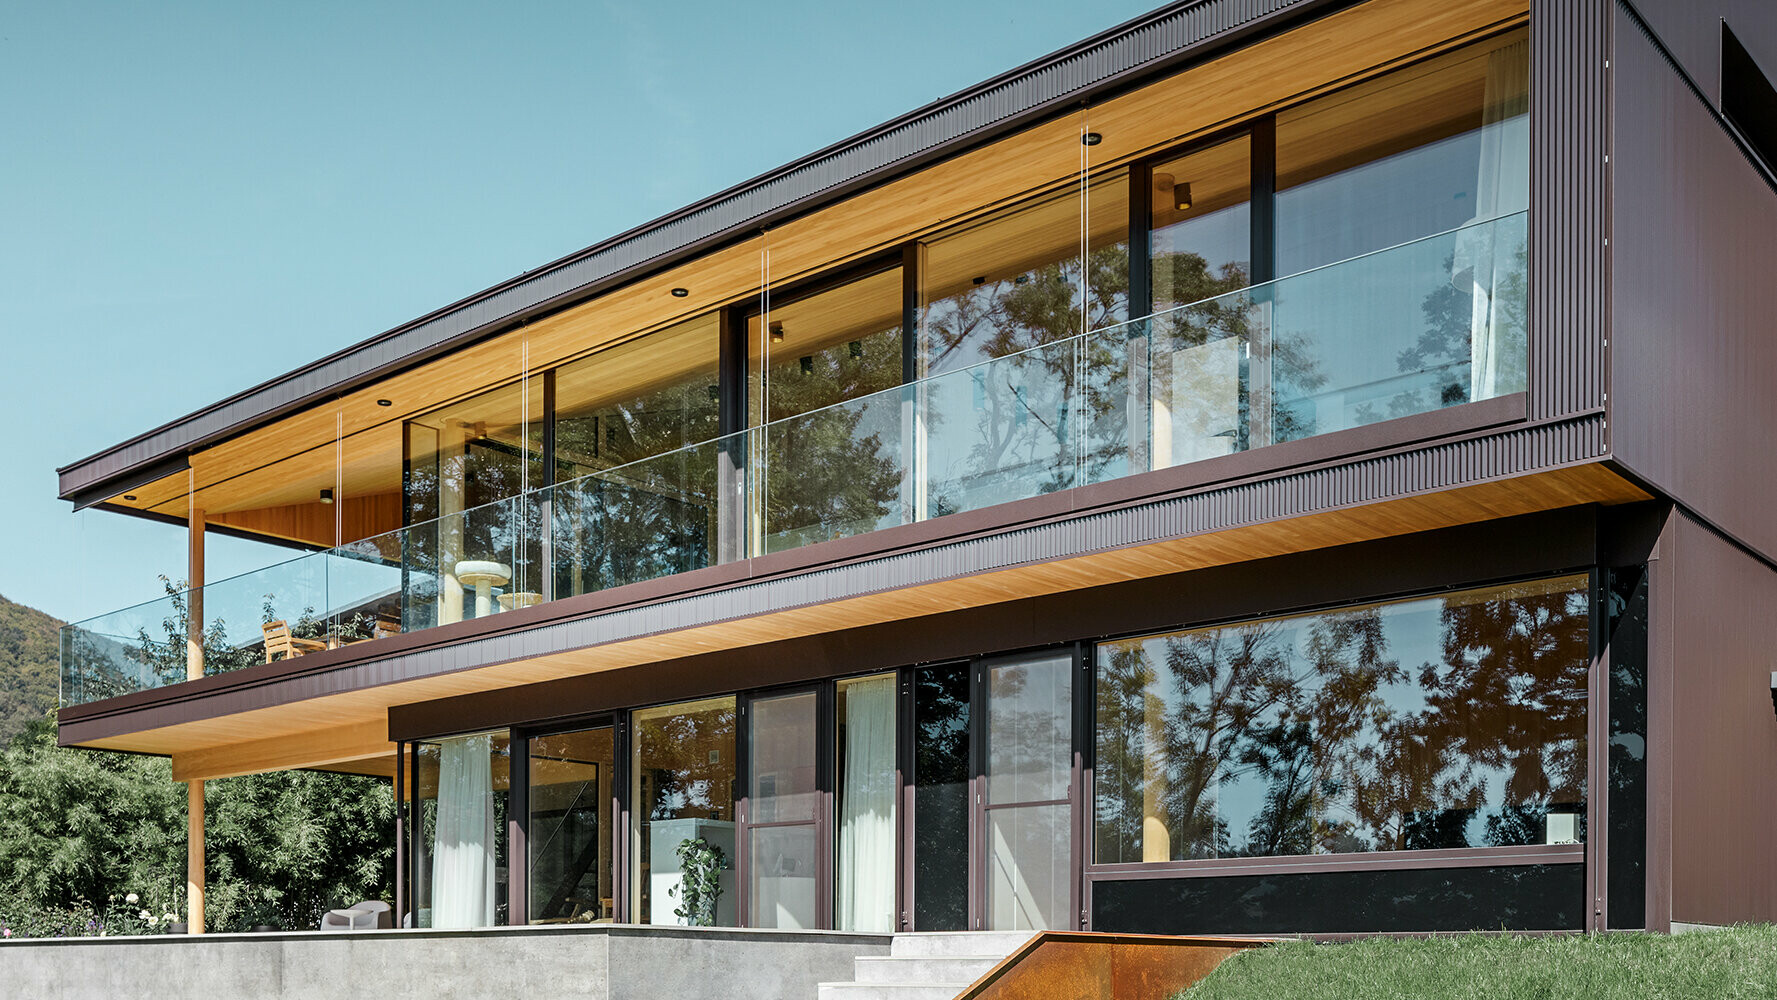 Nuova casa unifamiliare con ampie superfici in vetro e facciata in alluminio marrone